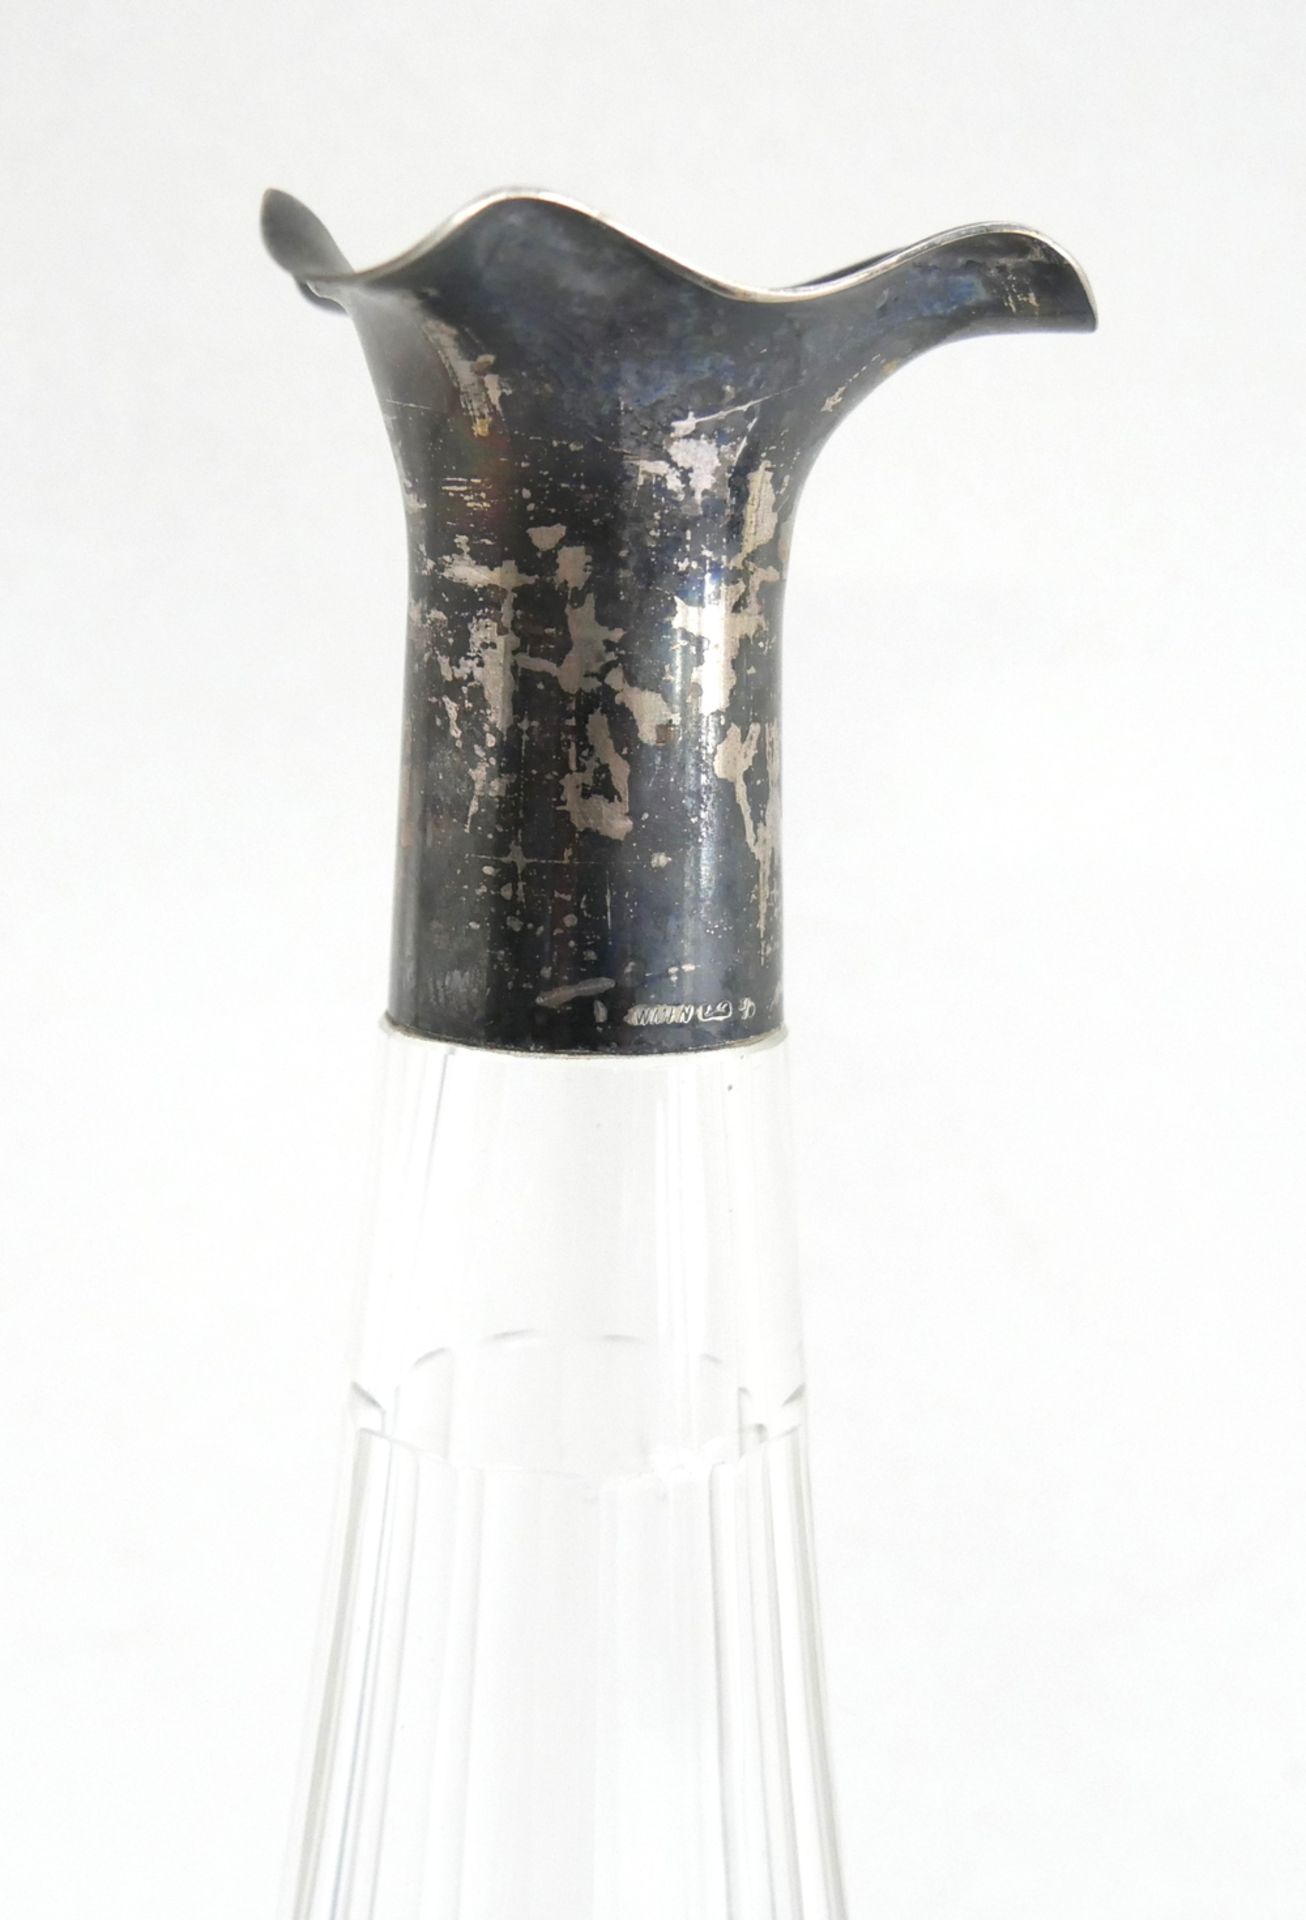 Likörflasche mit Silbermontur, Flasche mit Schliff. Ohne Stöpsel. Höhe ca. 31,5 cm - Bild 2 aus 2